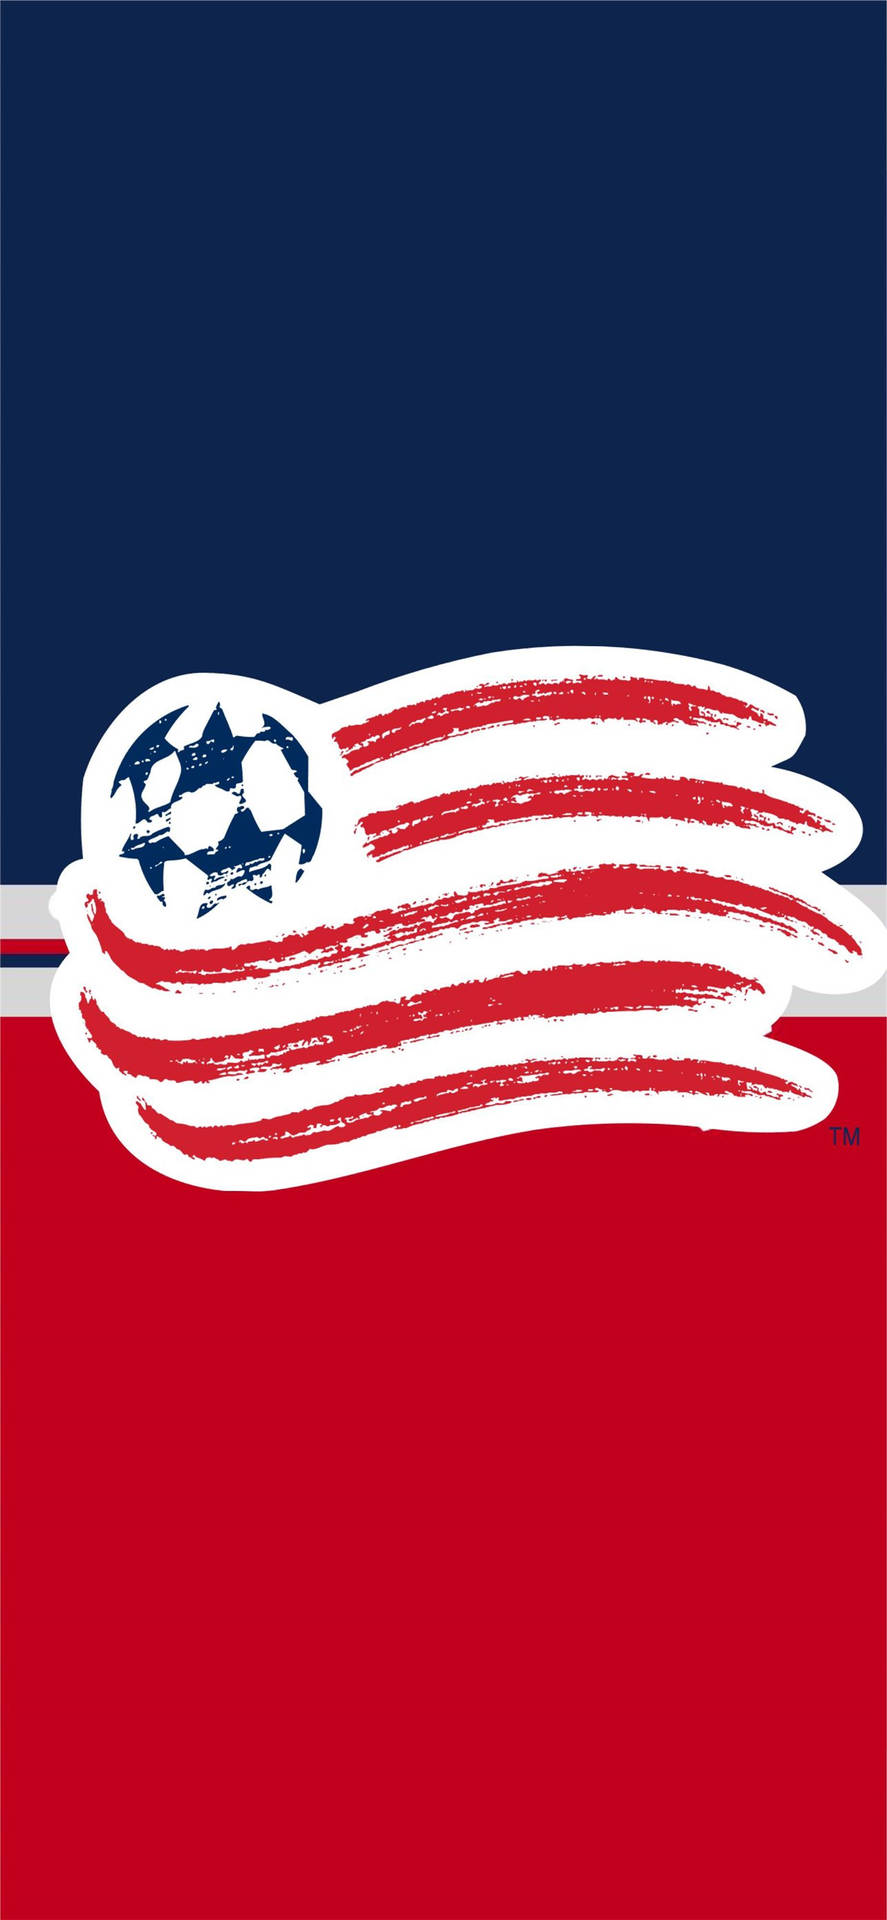 Soccer Team New England Revolution Logo Wallpaper